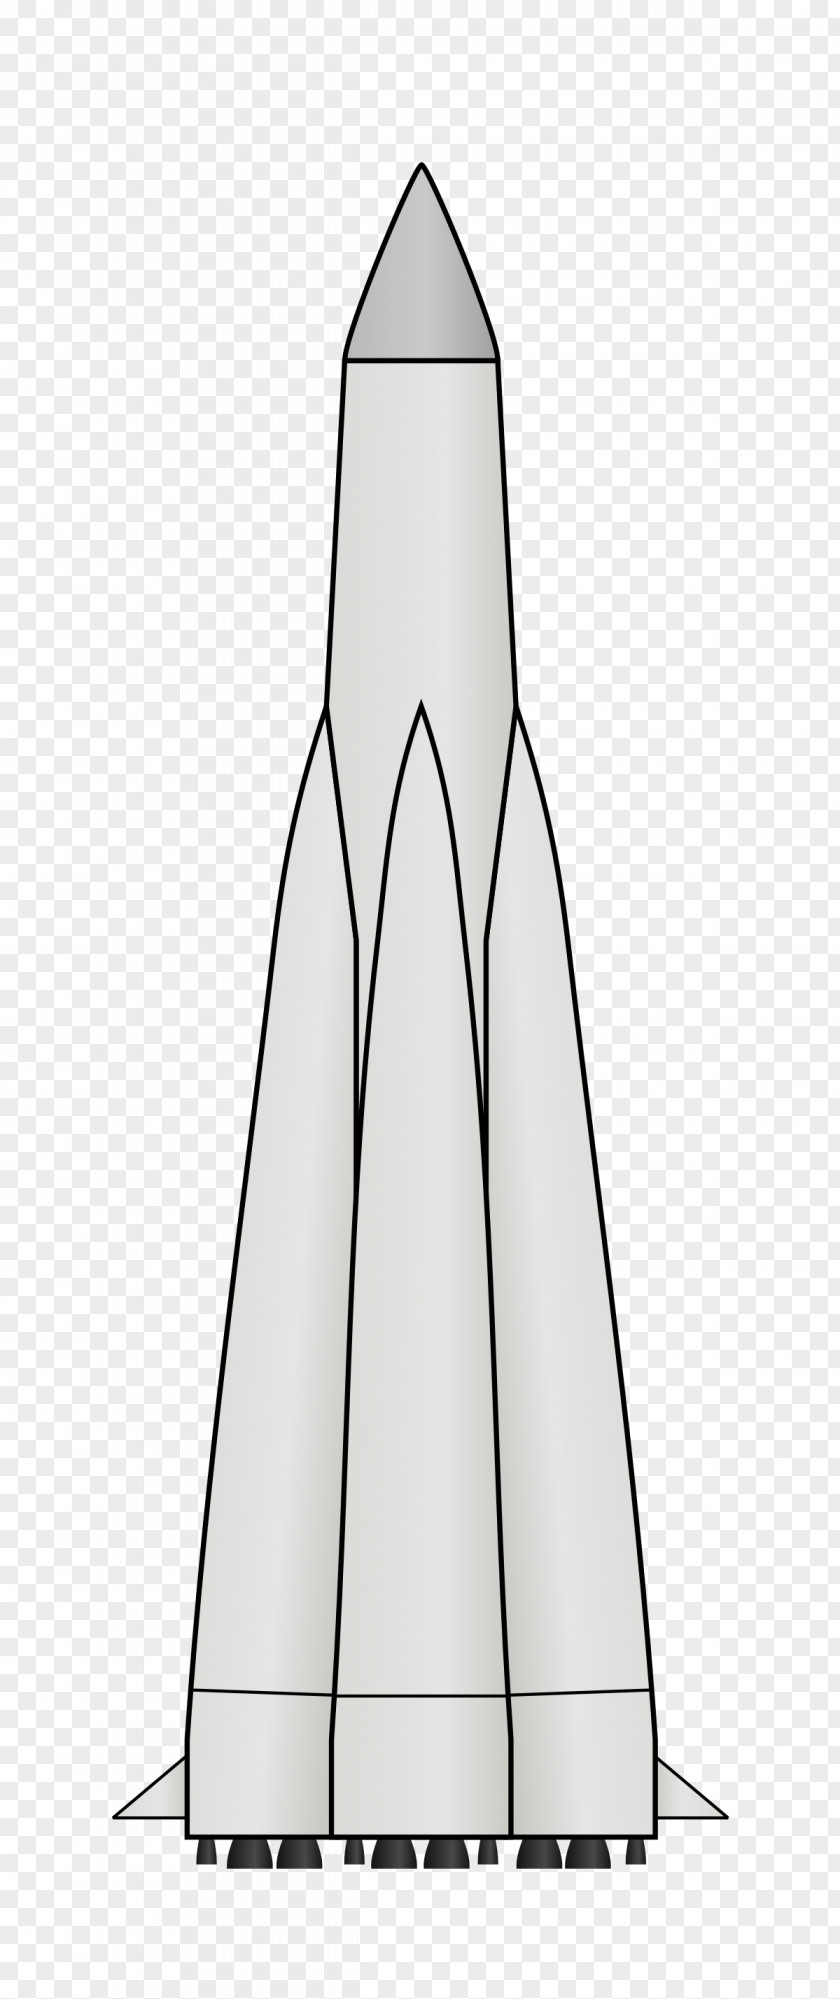 Rockets Sputnik 1 Rocket Korabl-Sputnik 2 PNG